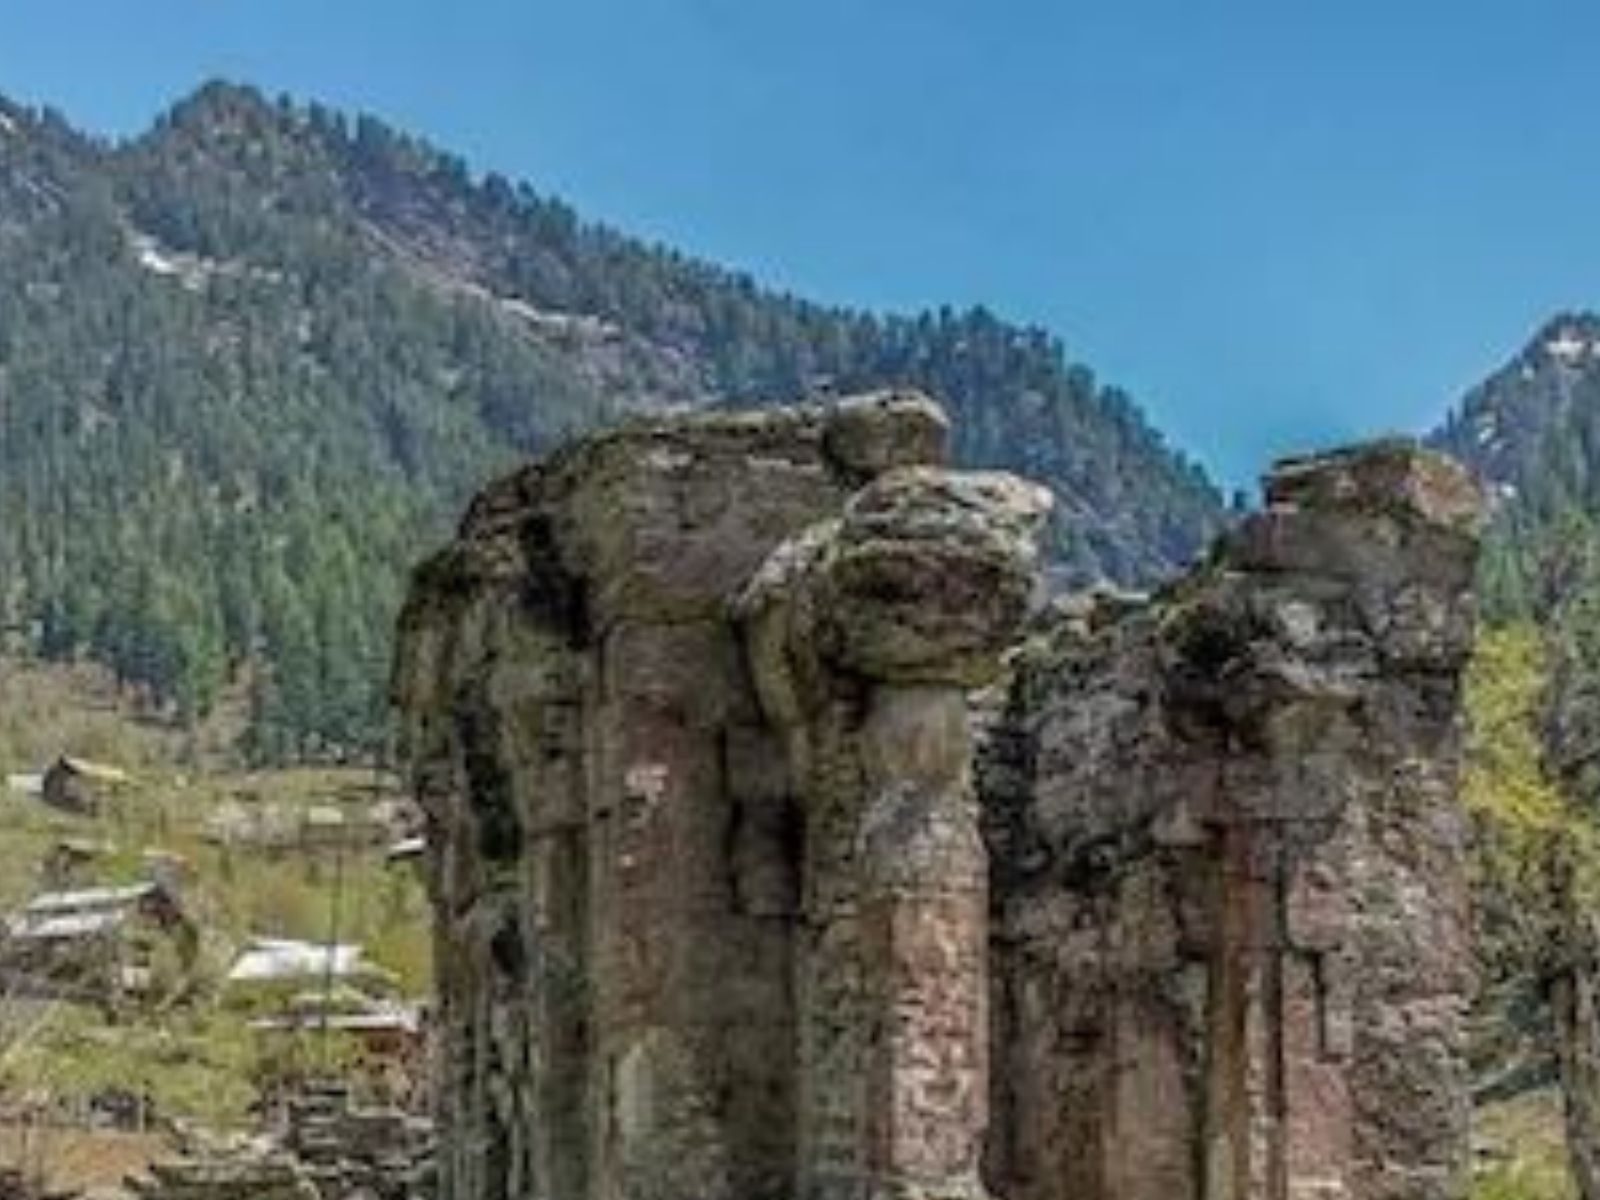 Kashmir: ਮੁਸਲਮਾਨਾਂ ਨੇ ਸ਼ਾਰਦਾ ਮੰਦਰ ਦੀ ਜ਼ਮੀਨ ਕਸ਼ਮੀਰੀ ਪੰਡਤਾਂ ਨੂੰ ਸੌਂਪੀ (Pic- news18 hindi)